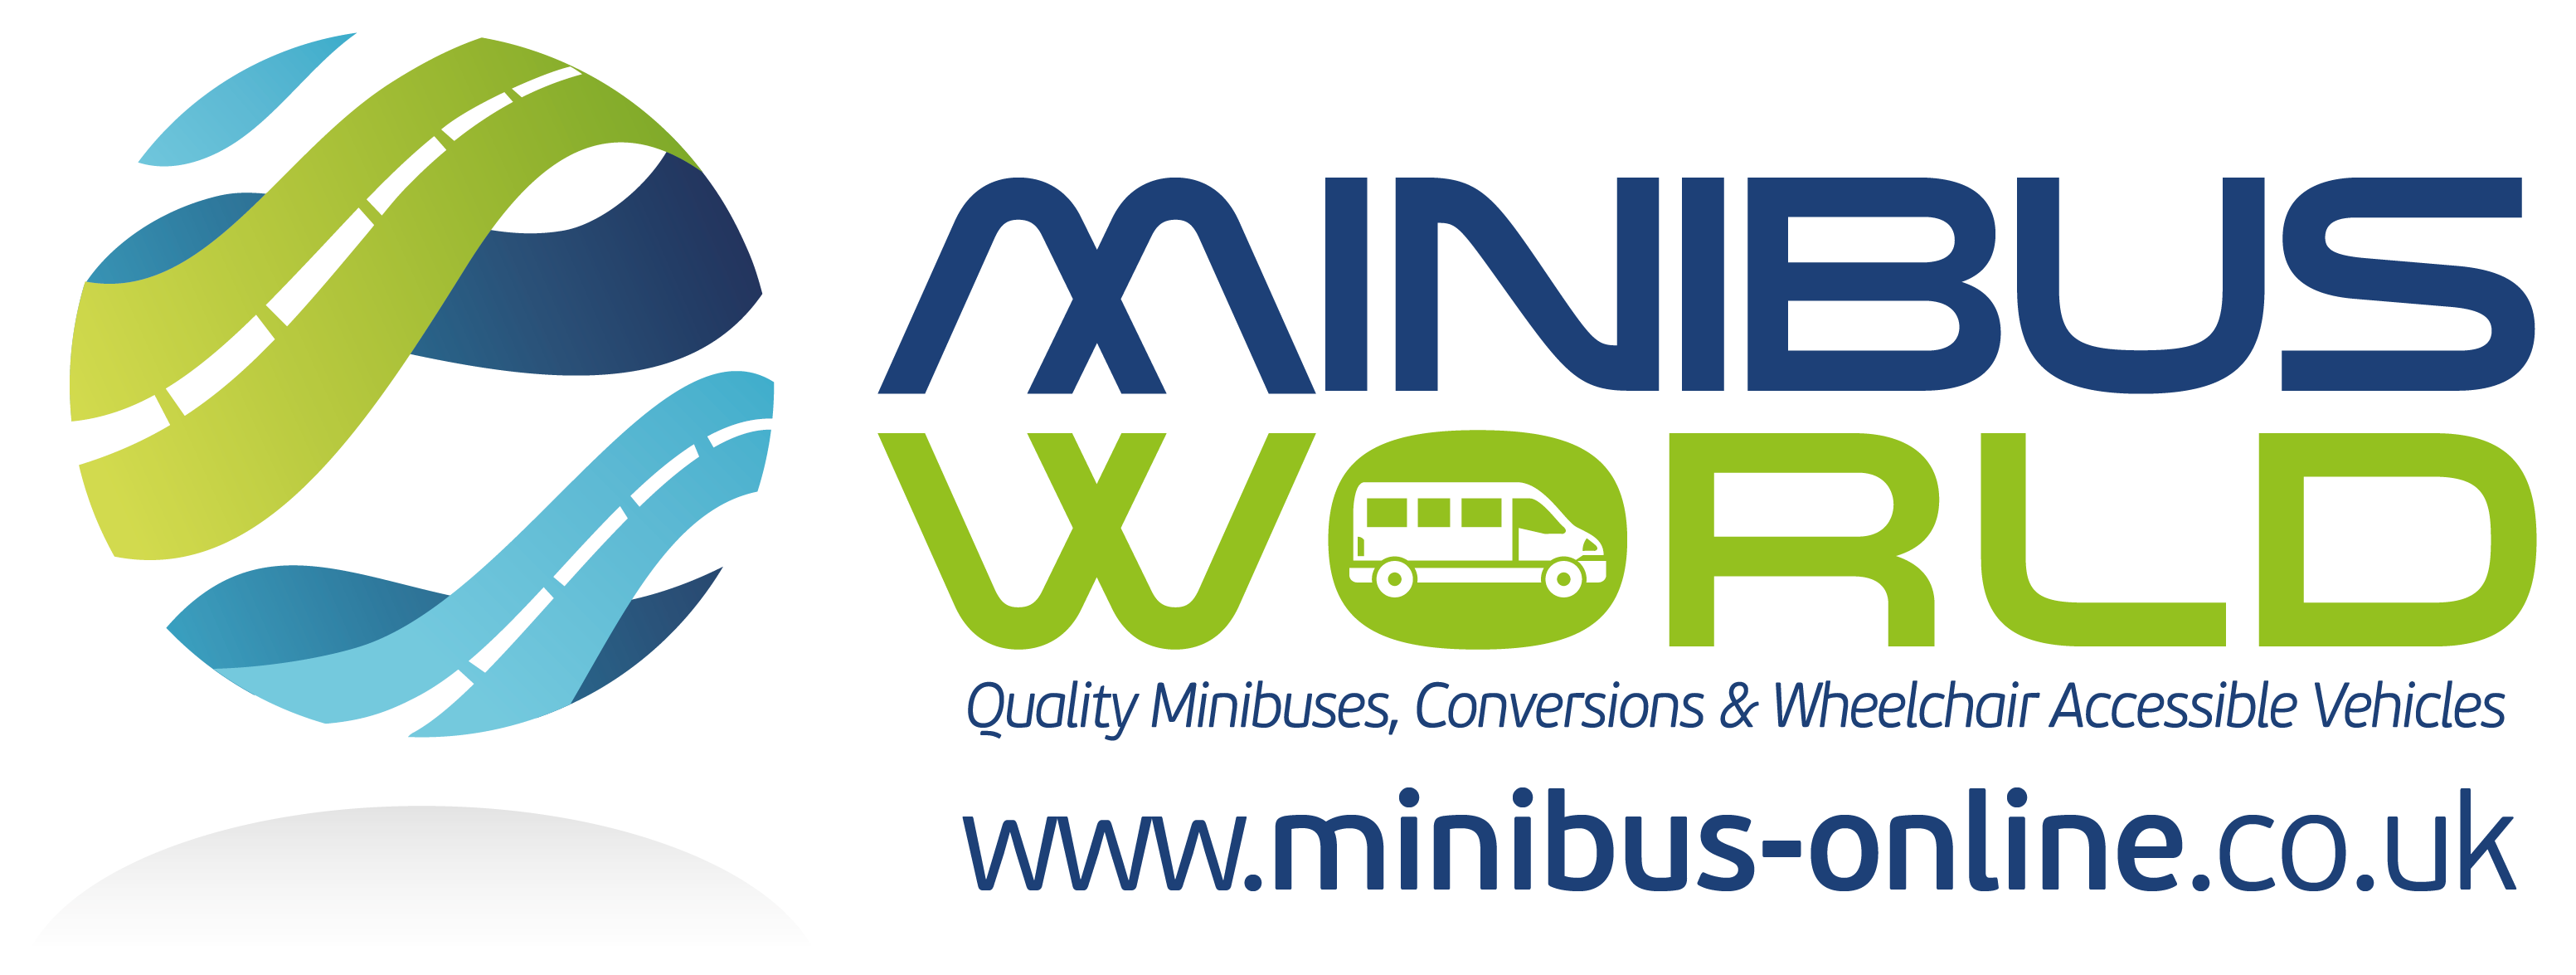 Minibus World Ltd